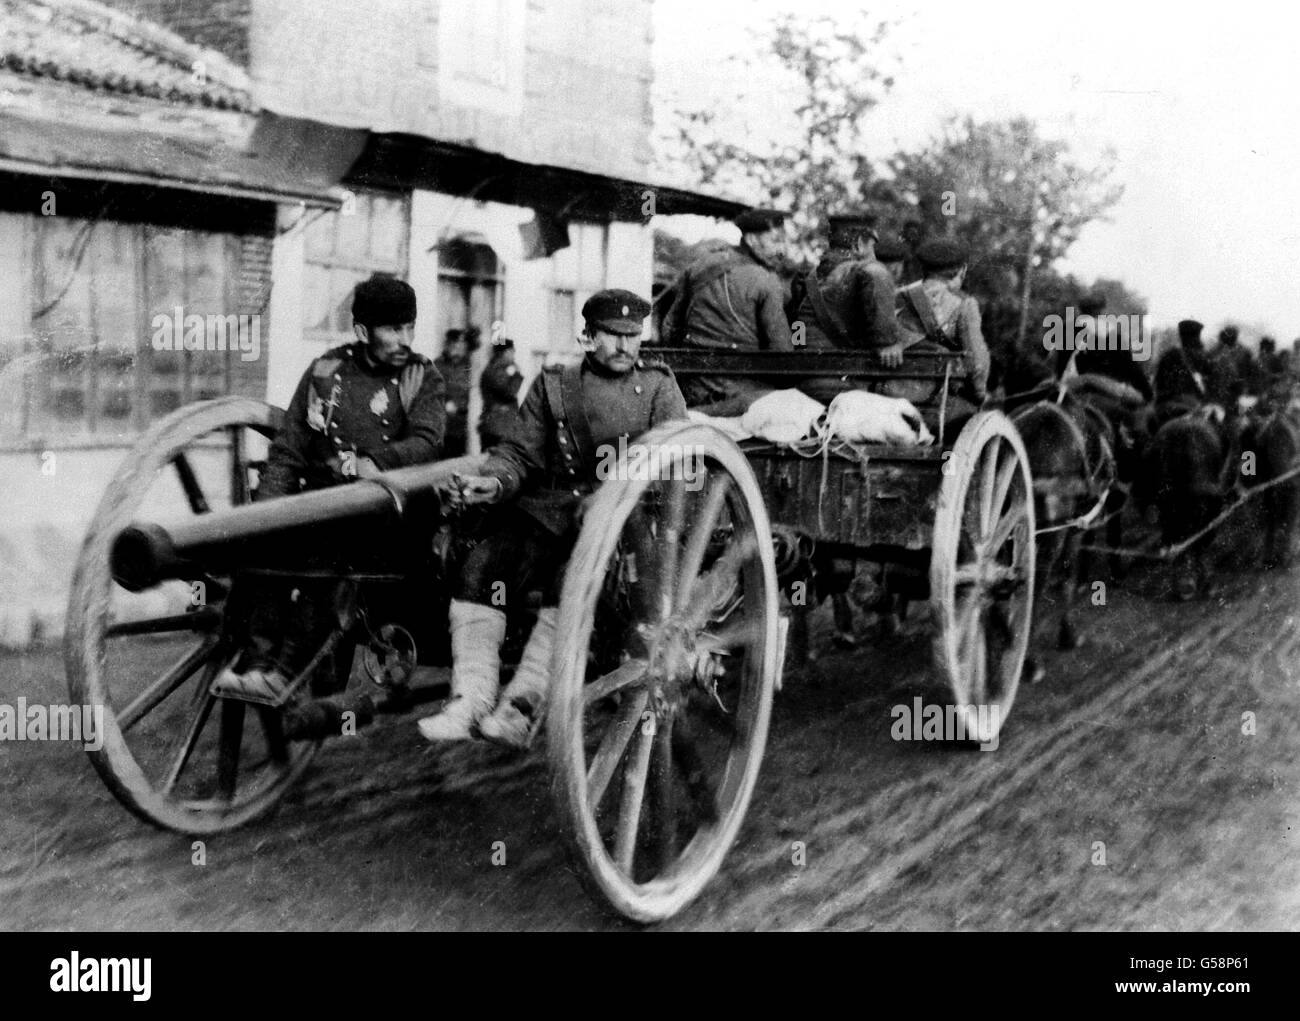 DER BALKANKRIEG: Ein bulgarisches Artillerieteam auf dem marsch während des Balkankrieges von 1912-1913. Stockfoto